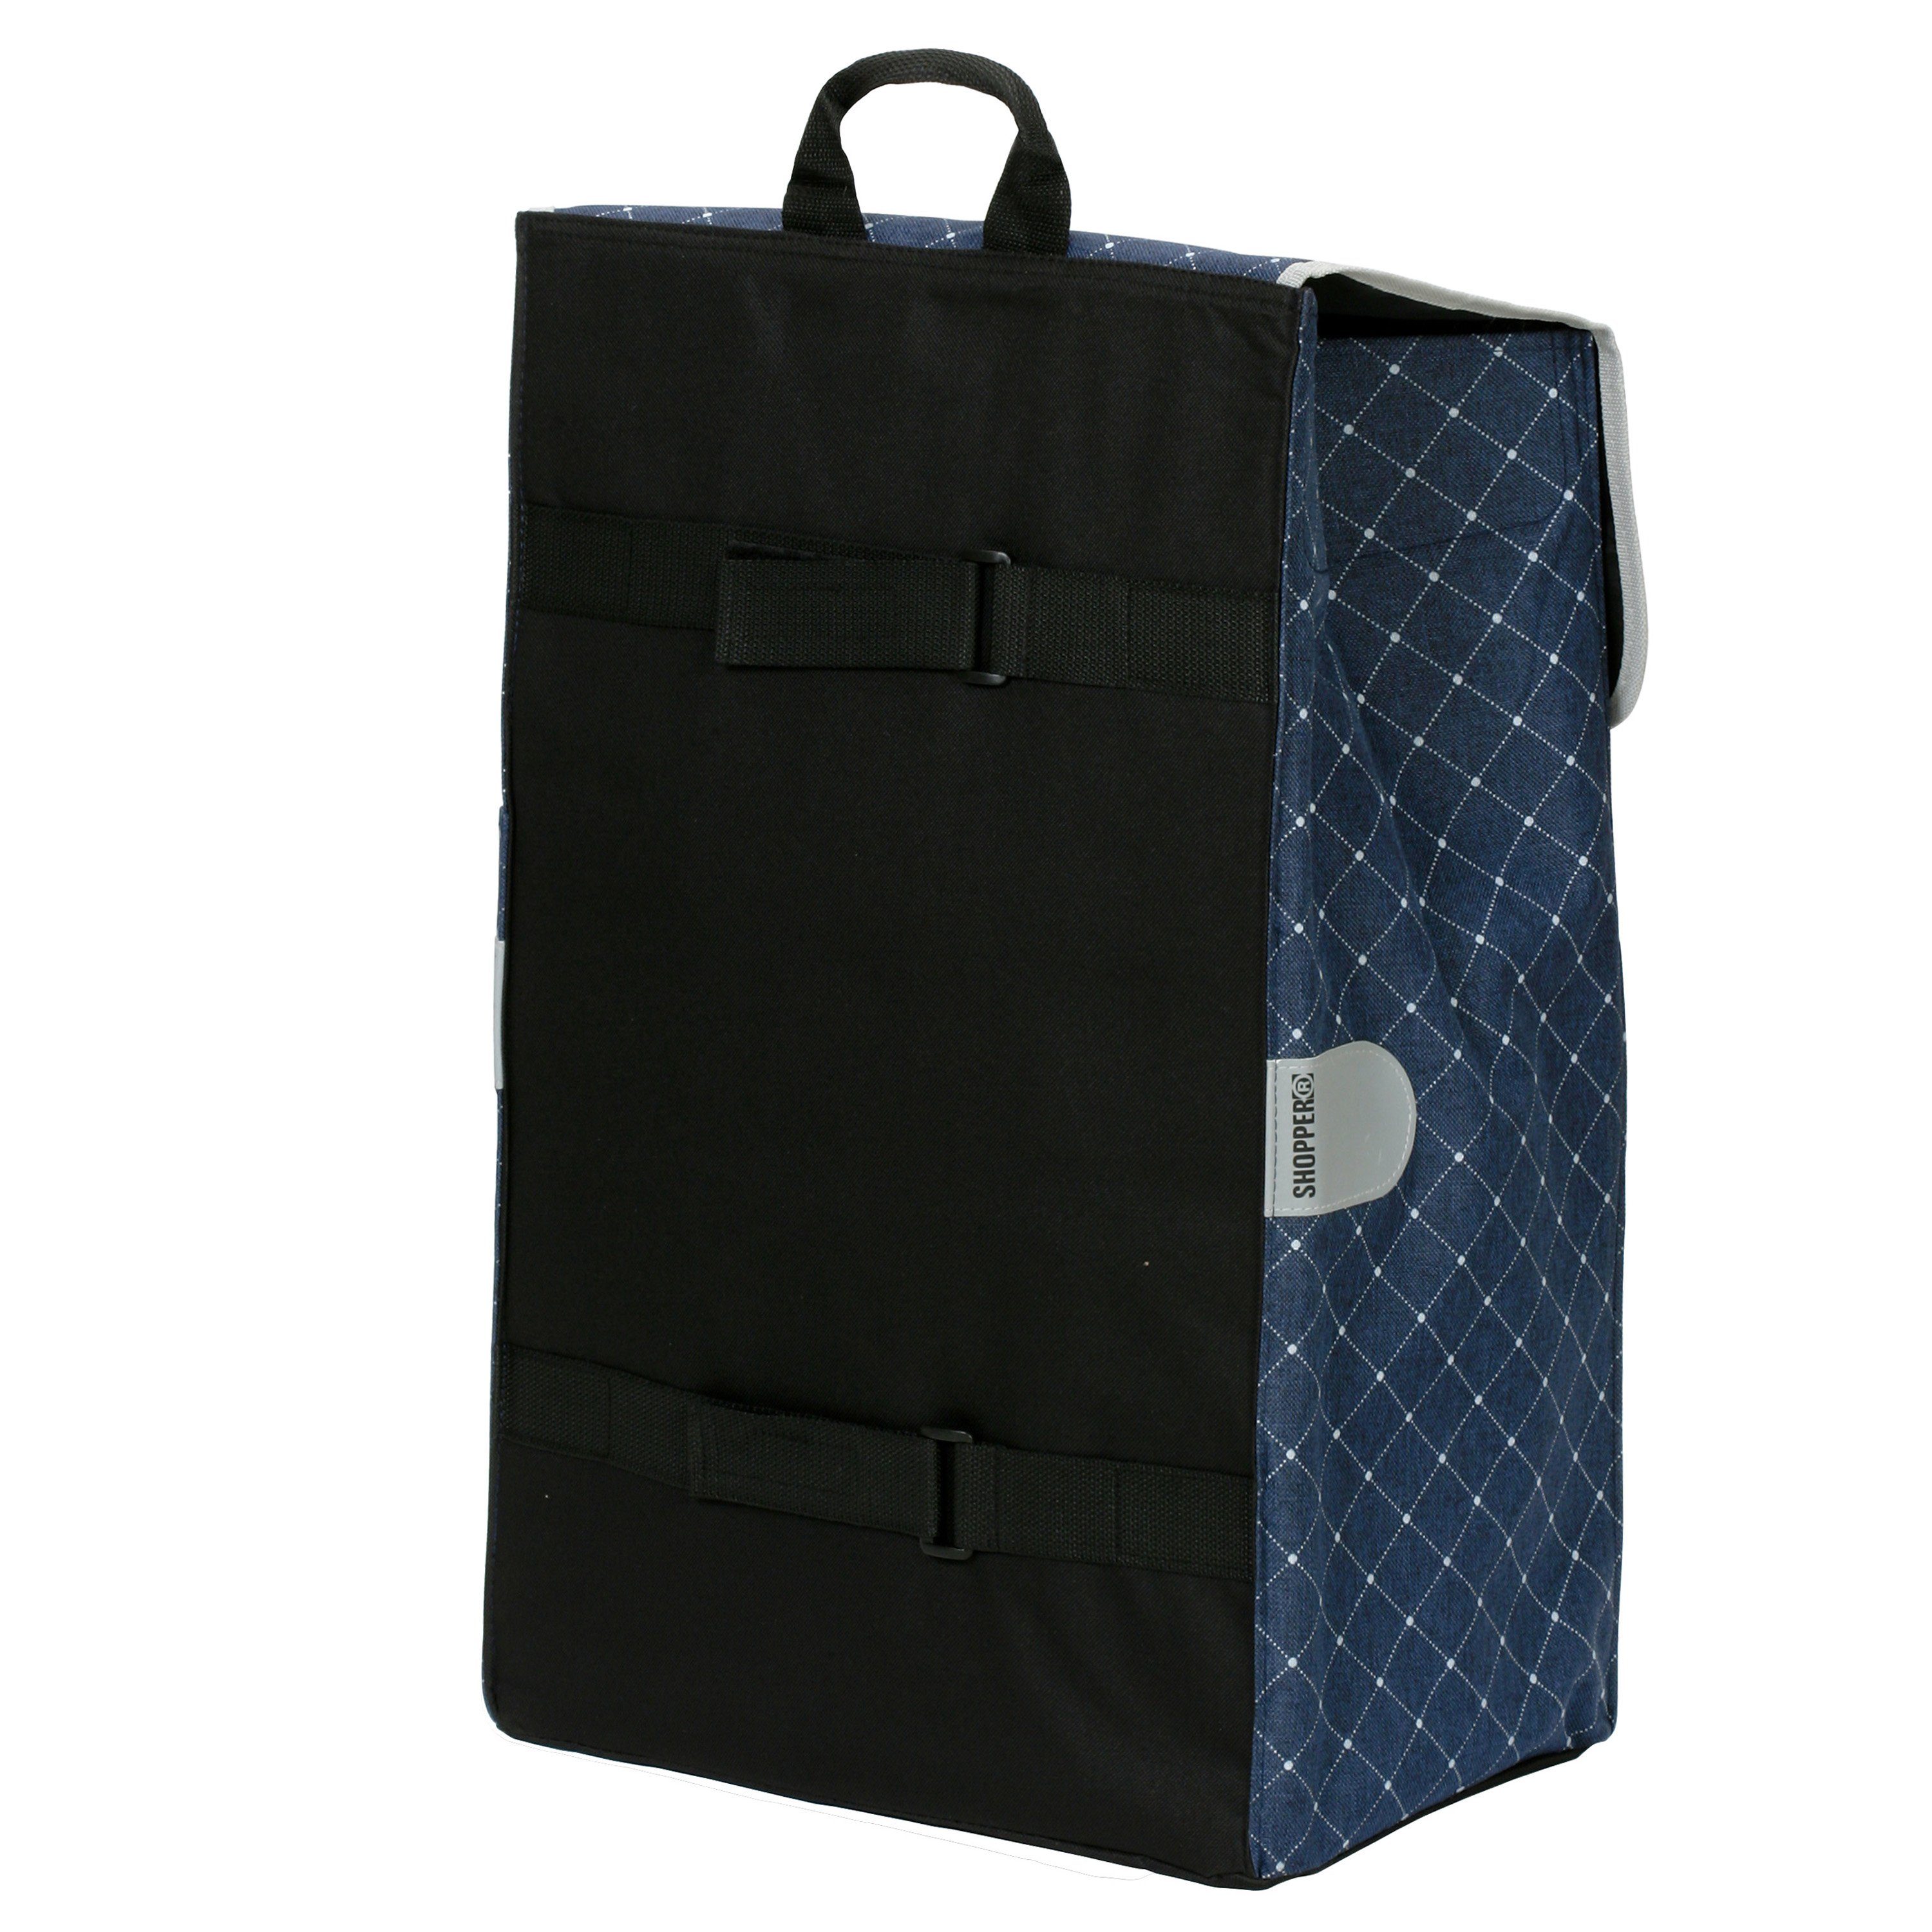 Blau Tamo in mit Andersen Tasche Anthrazit oder Scala Shopper Einkaufstrolley